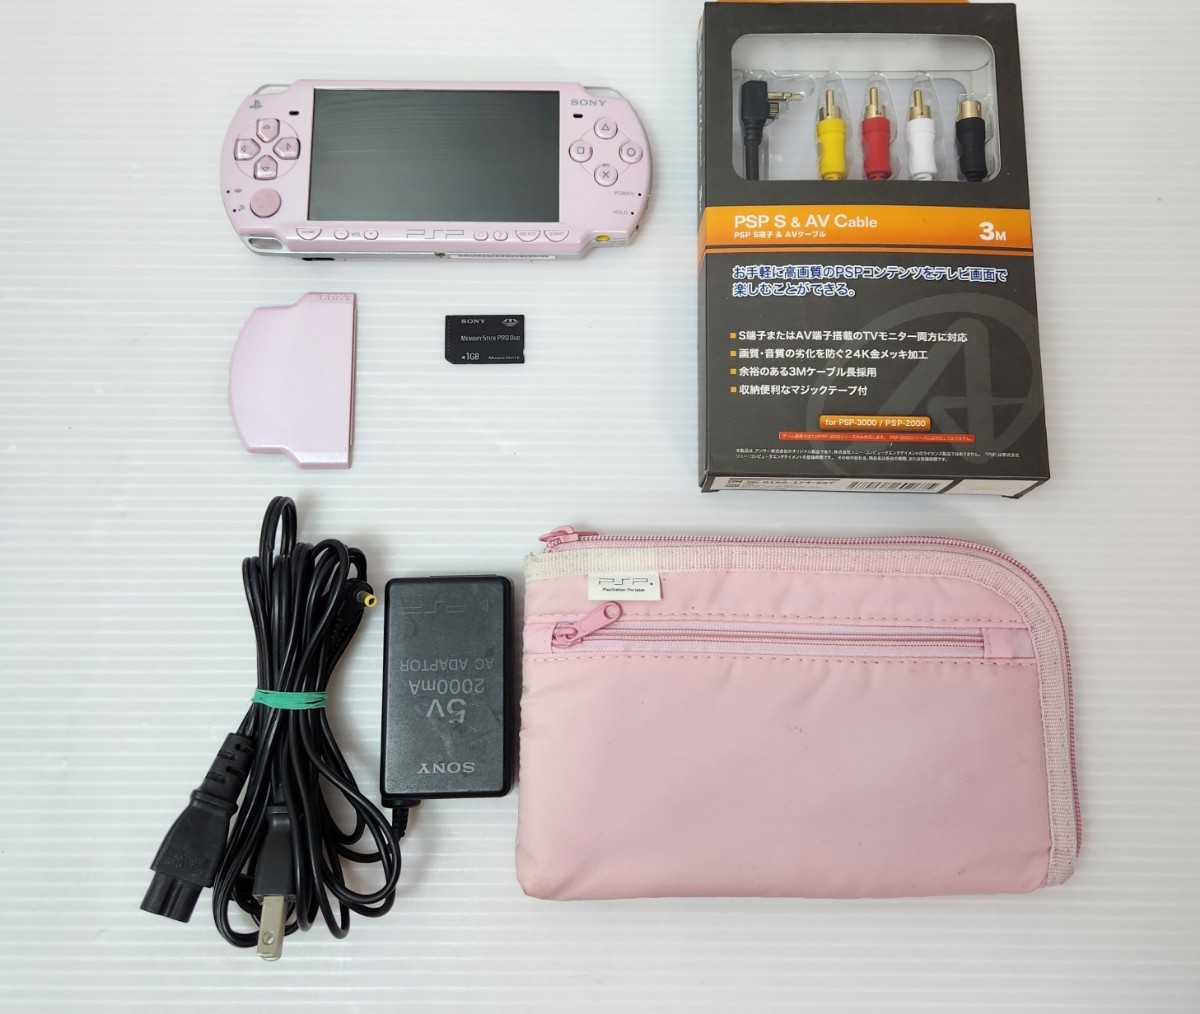  прекрасный товар / рабочий товар PSP[ PlayStation * портативный ] rose * розовый 1GB, телевизор AV кабель, сумка (PSP-2000RP)